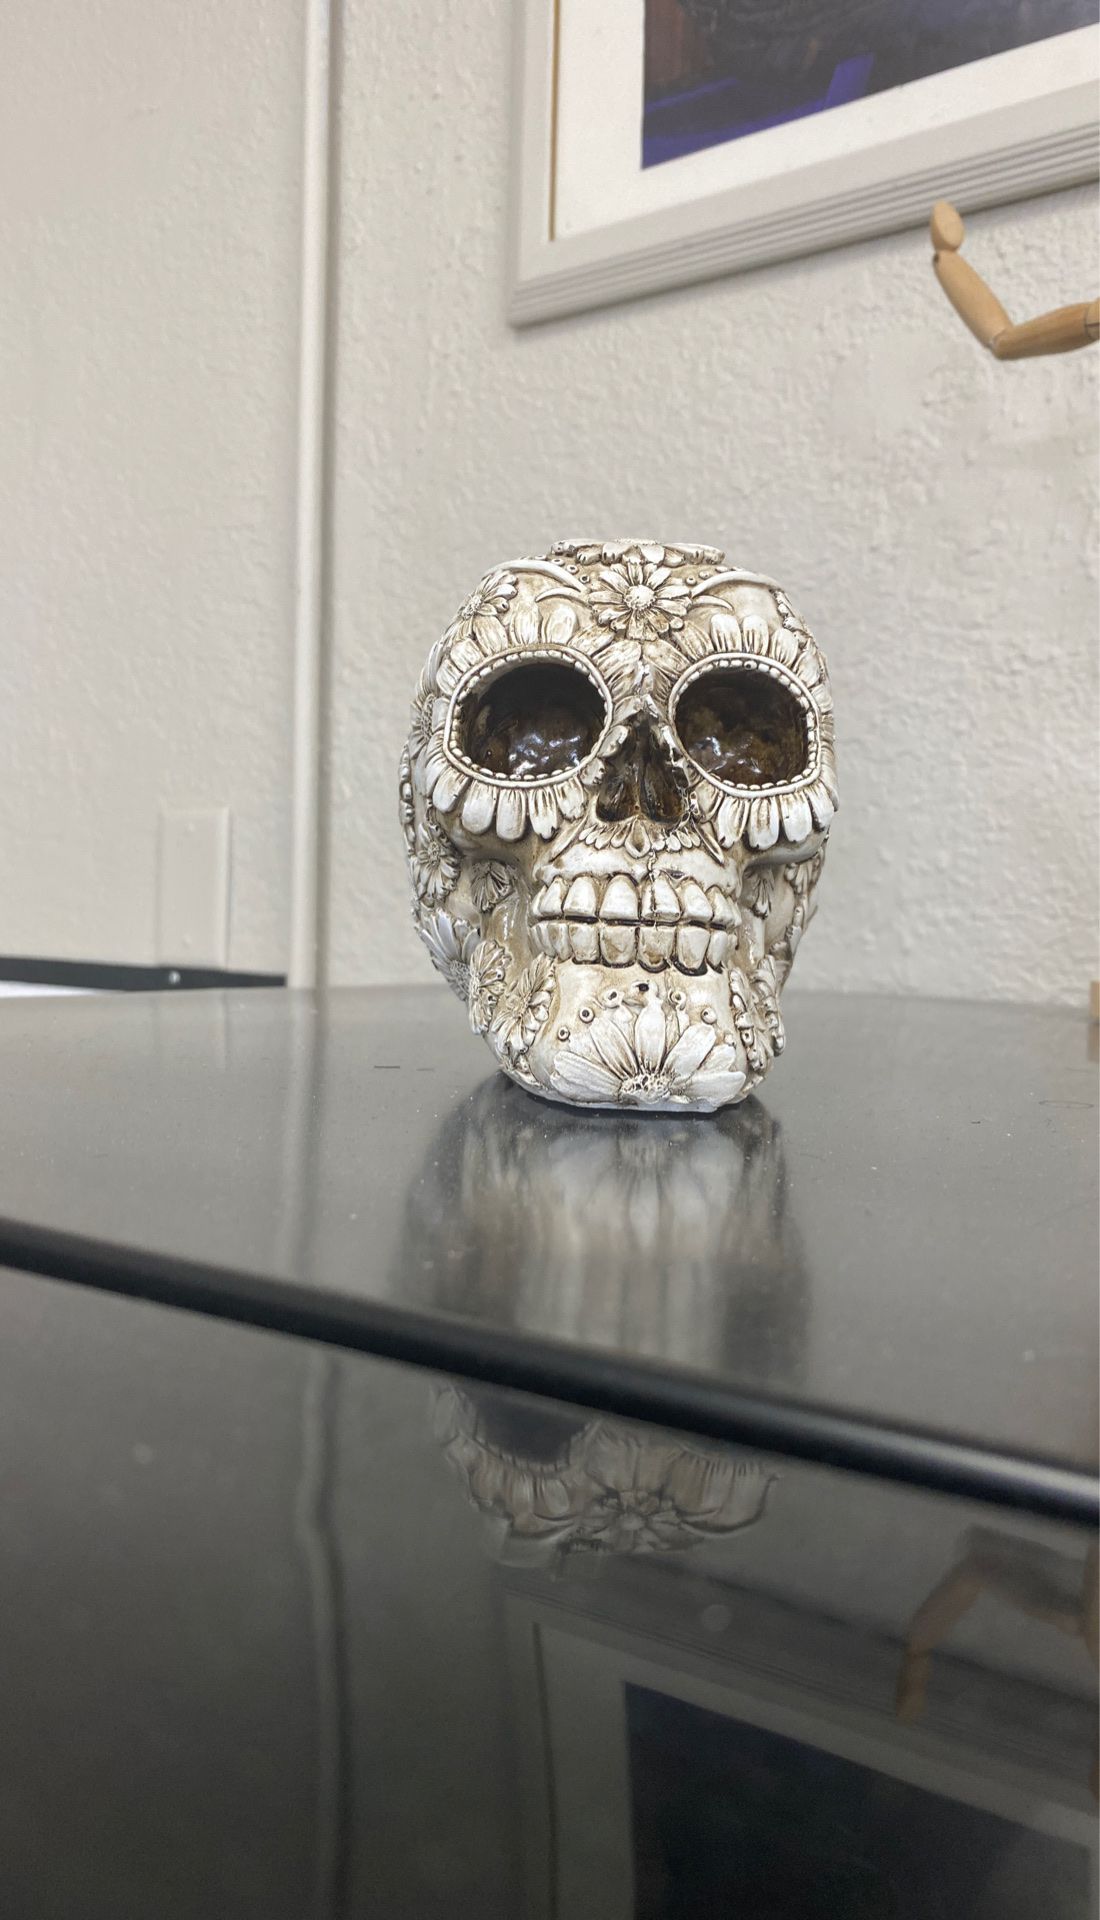 Skull art